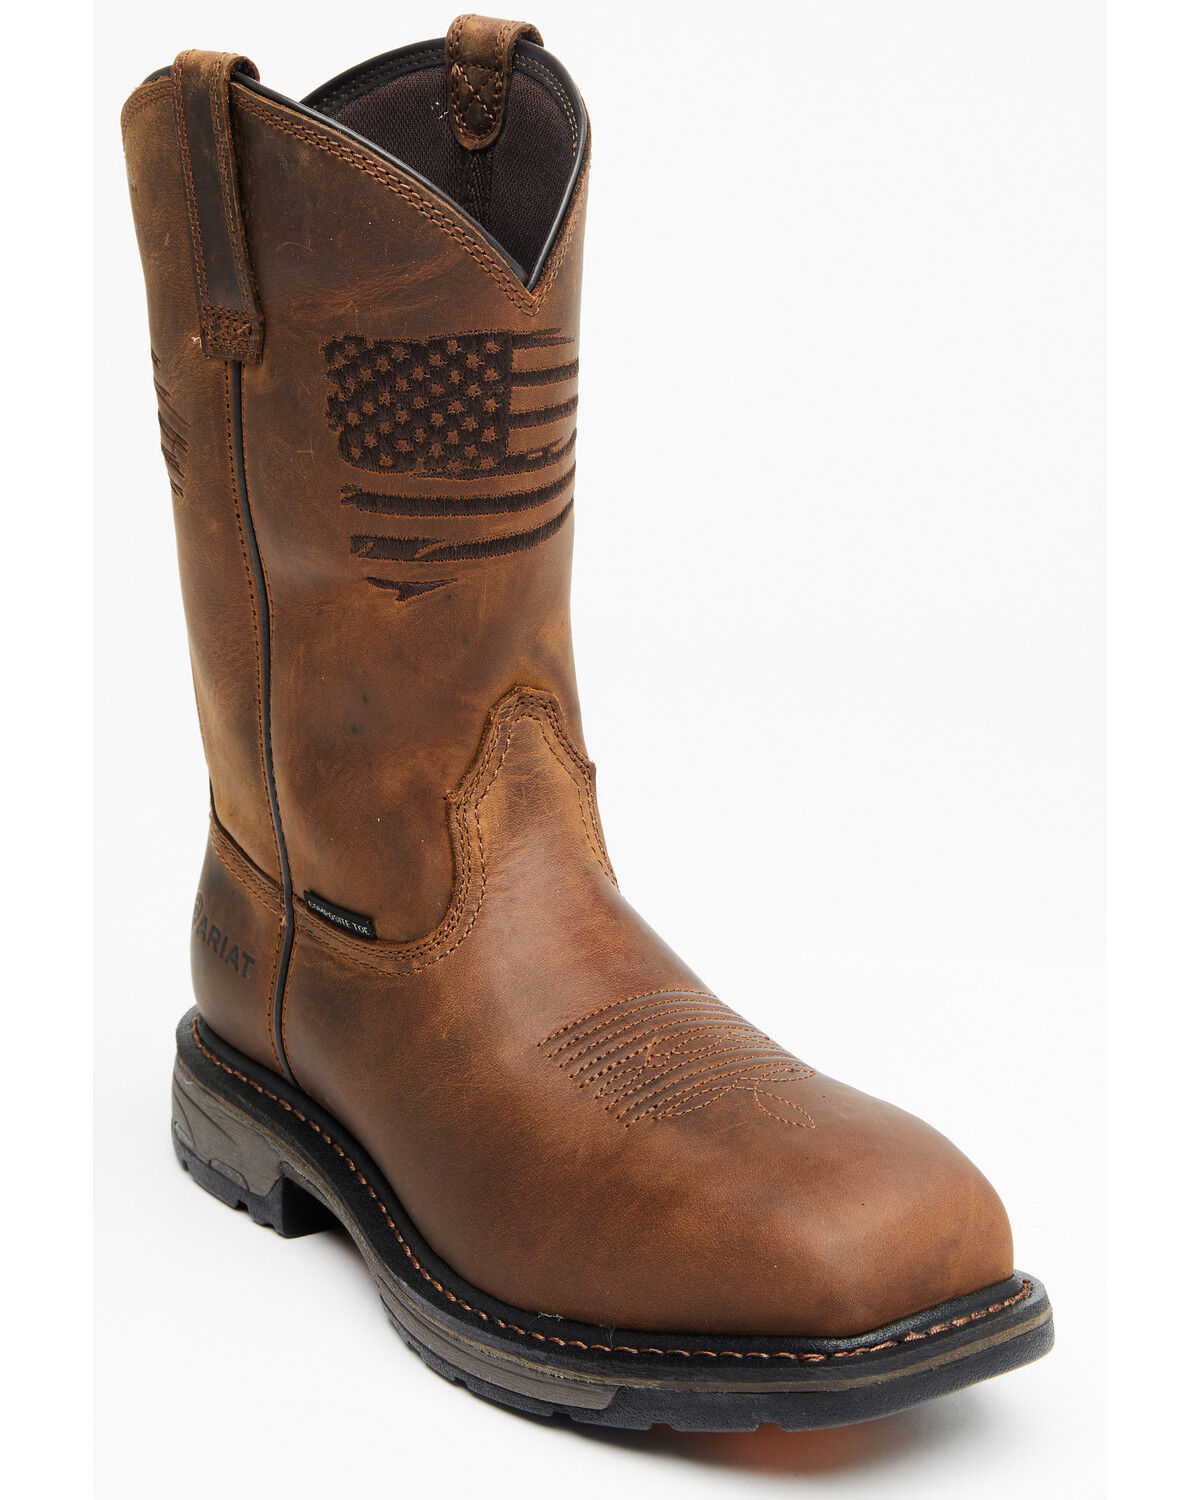 cowboy boots composite toe